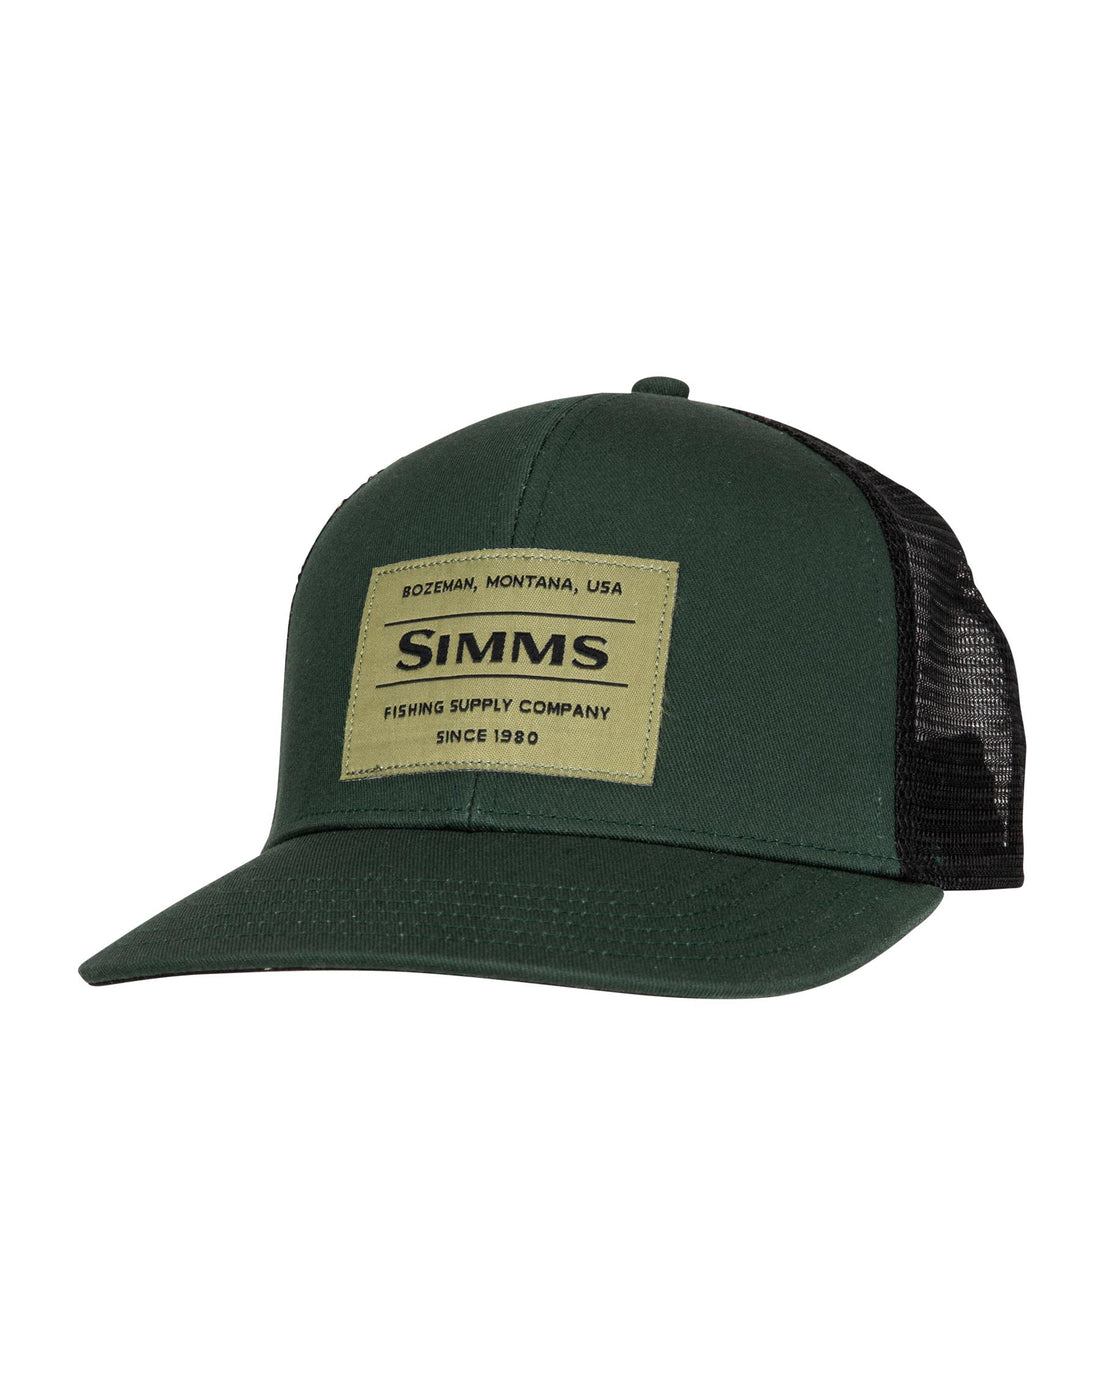 Simms Tagged Hat - LOTWSHQ